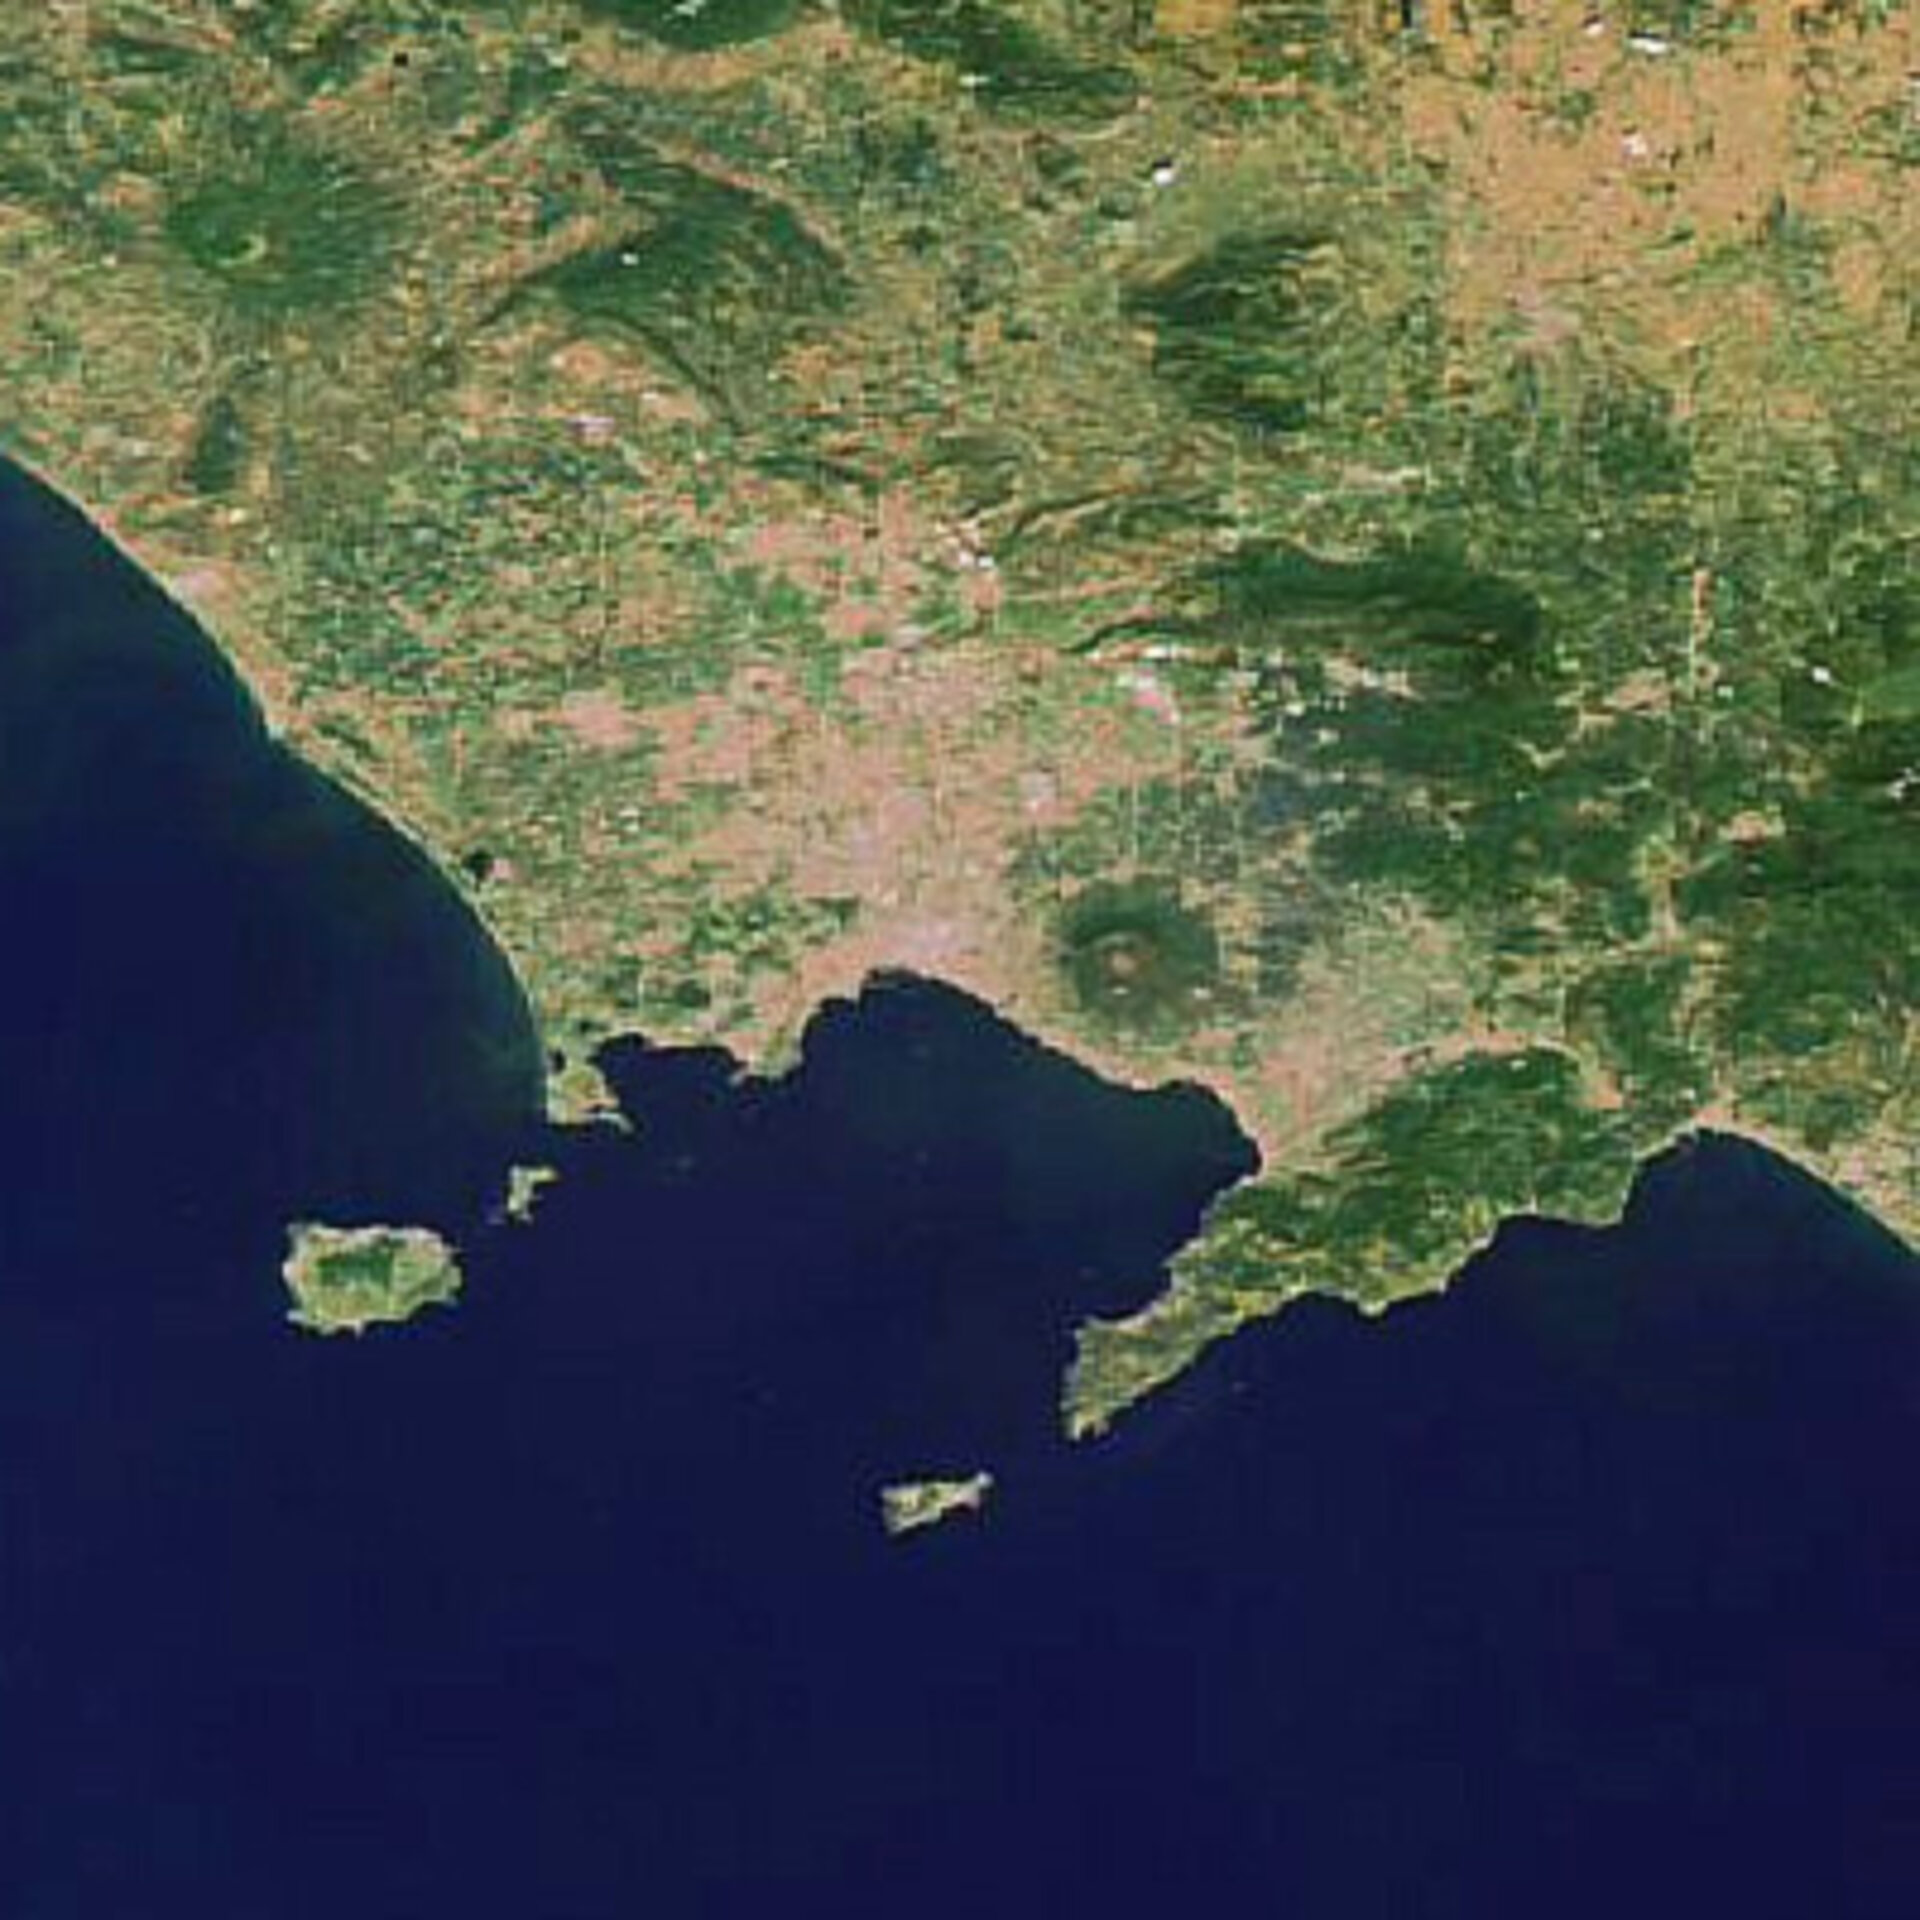 Golfo di Napoli, Envisat, Meris - Luglio 2006